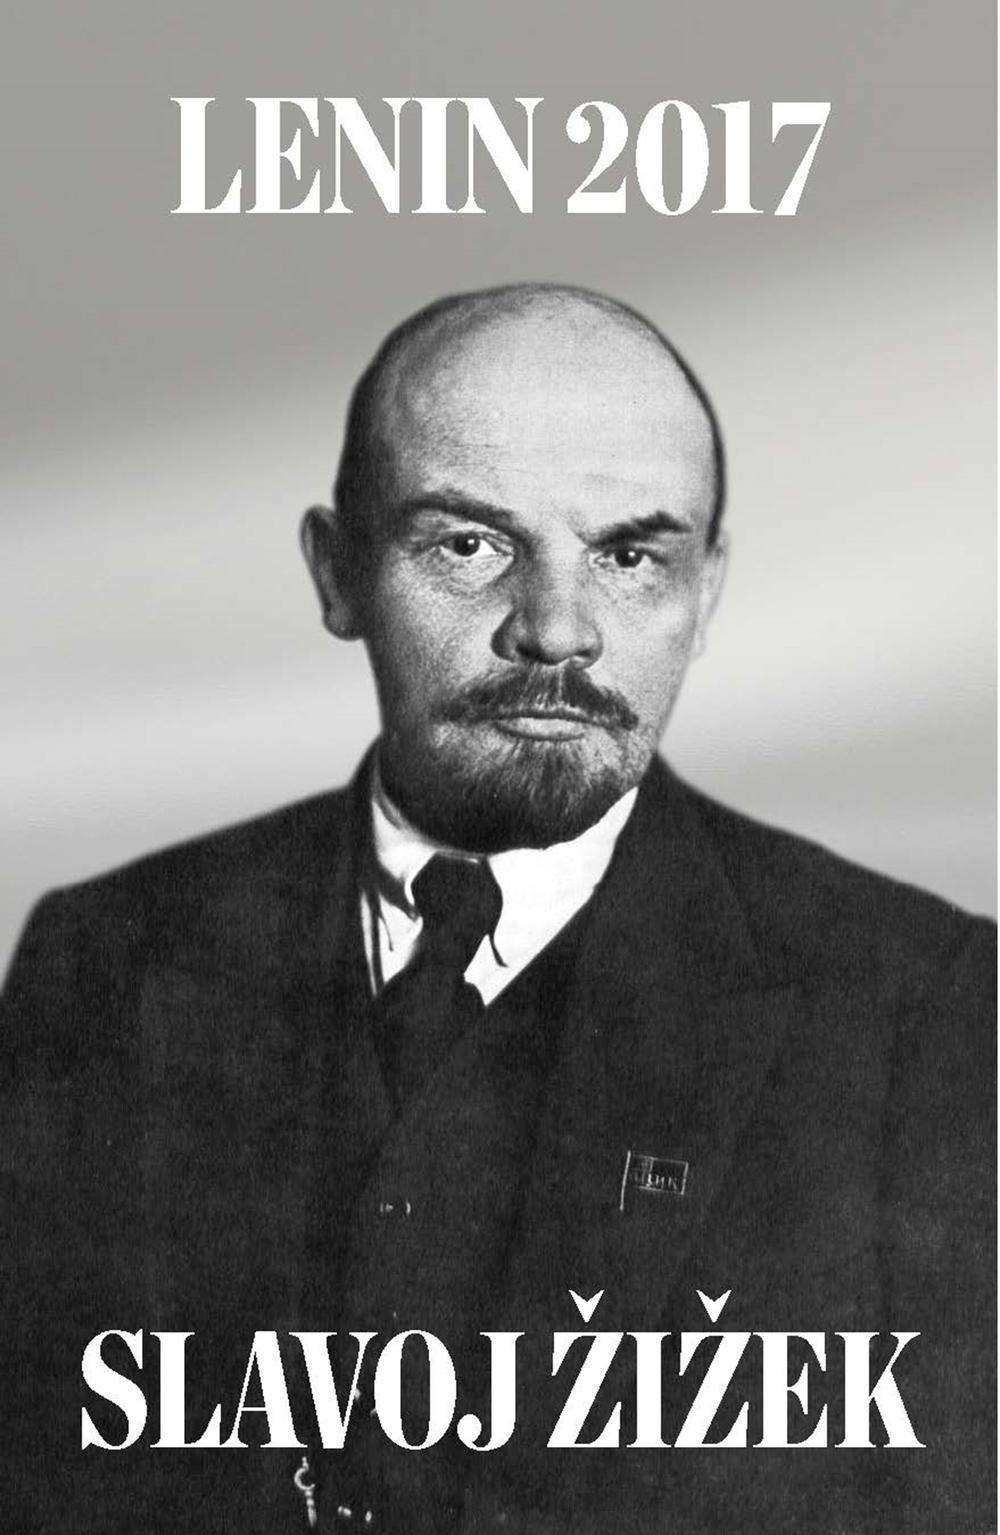 Lenin 2017: Remembering, Repeating, and Working Through - Slavoj Zizek